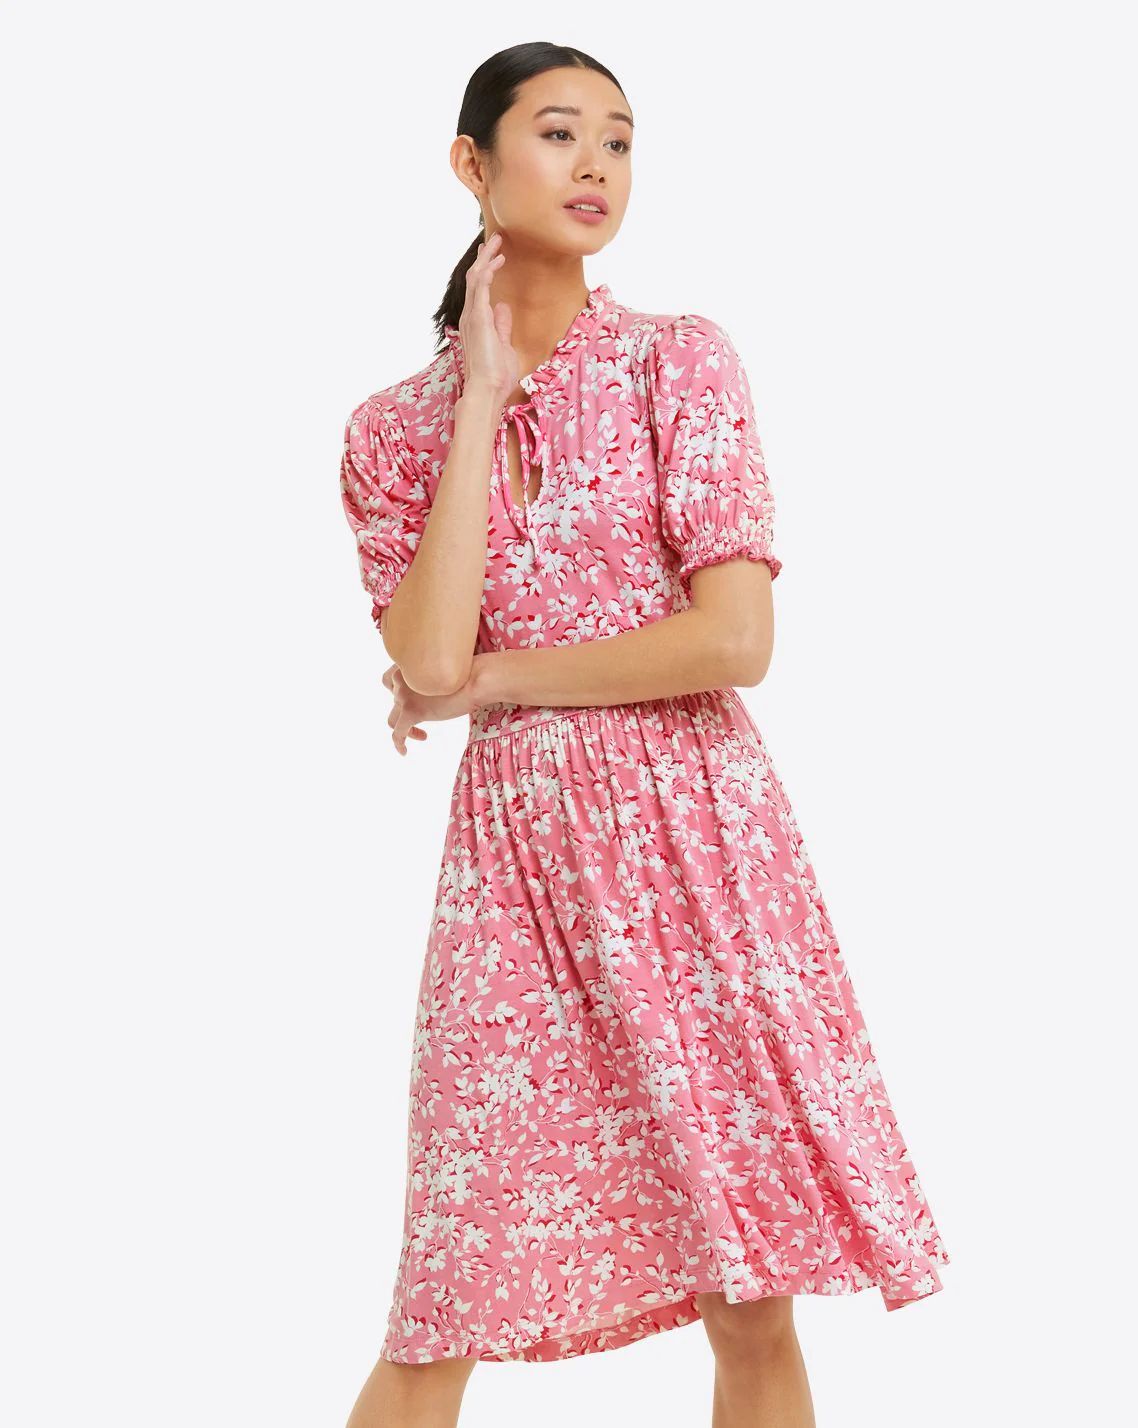 Nanci Knit Dress in Pink Shadow Floral | Draper James (US)